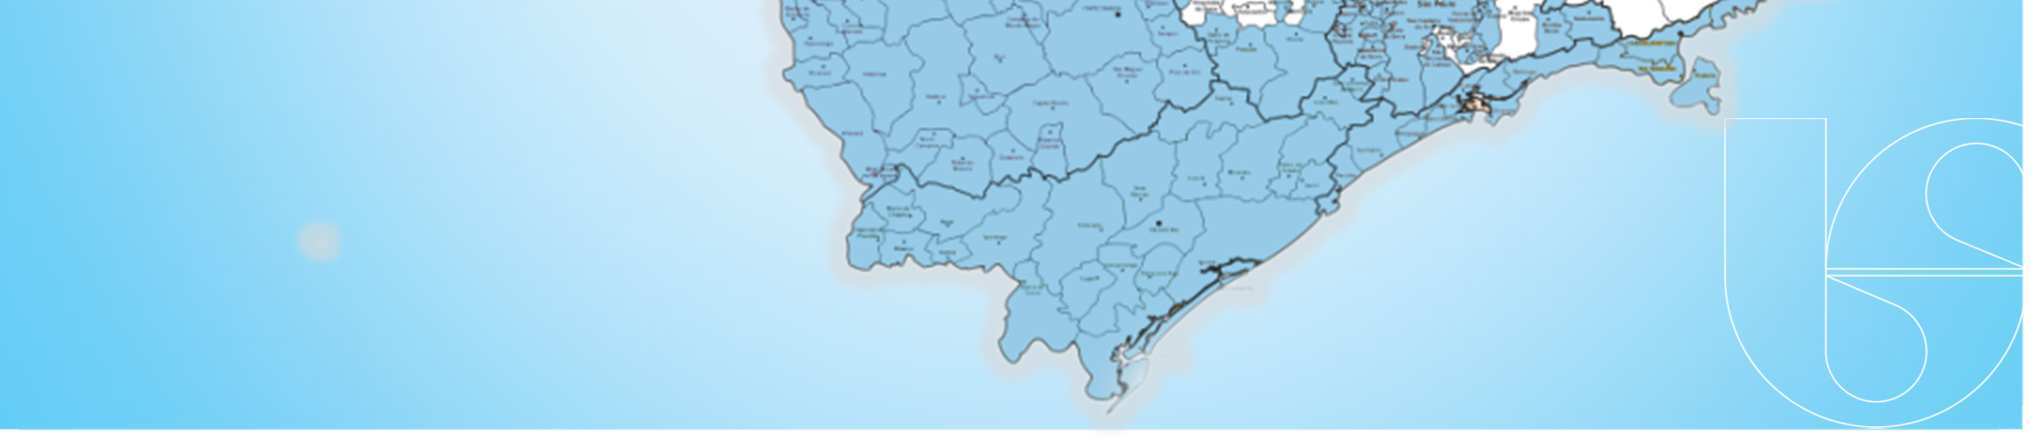 Municípios Atendidos pela Sabesp 363 municípios, quase 70% da população urbana de São